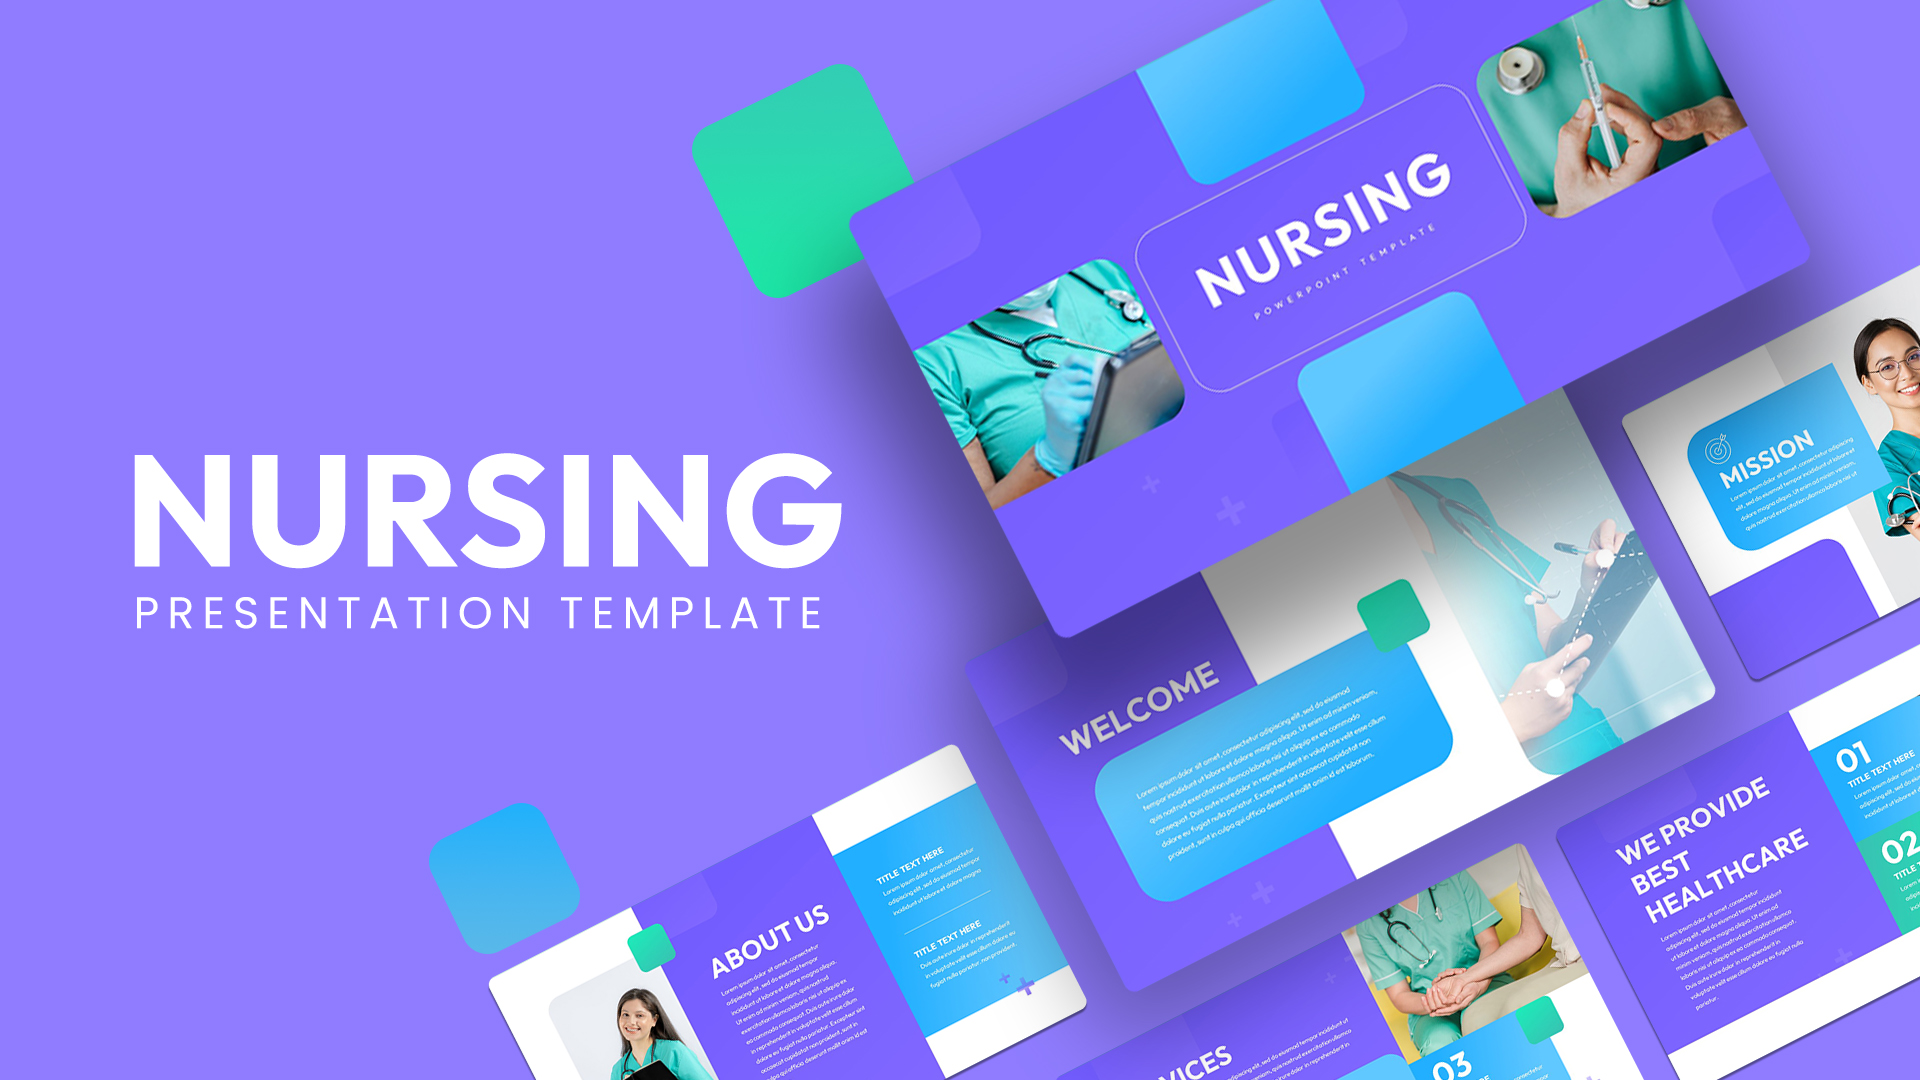 Nursing PowerPoint Template SlideBazaar